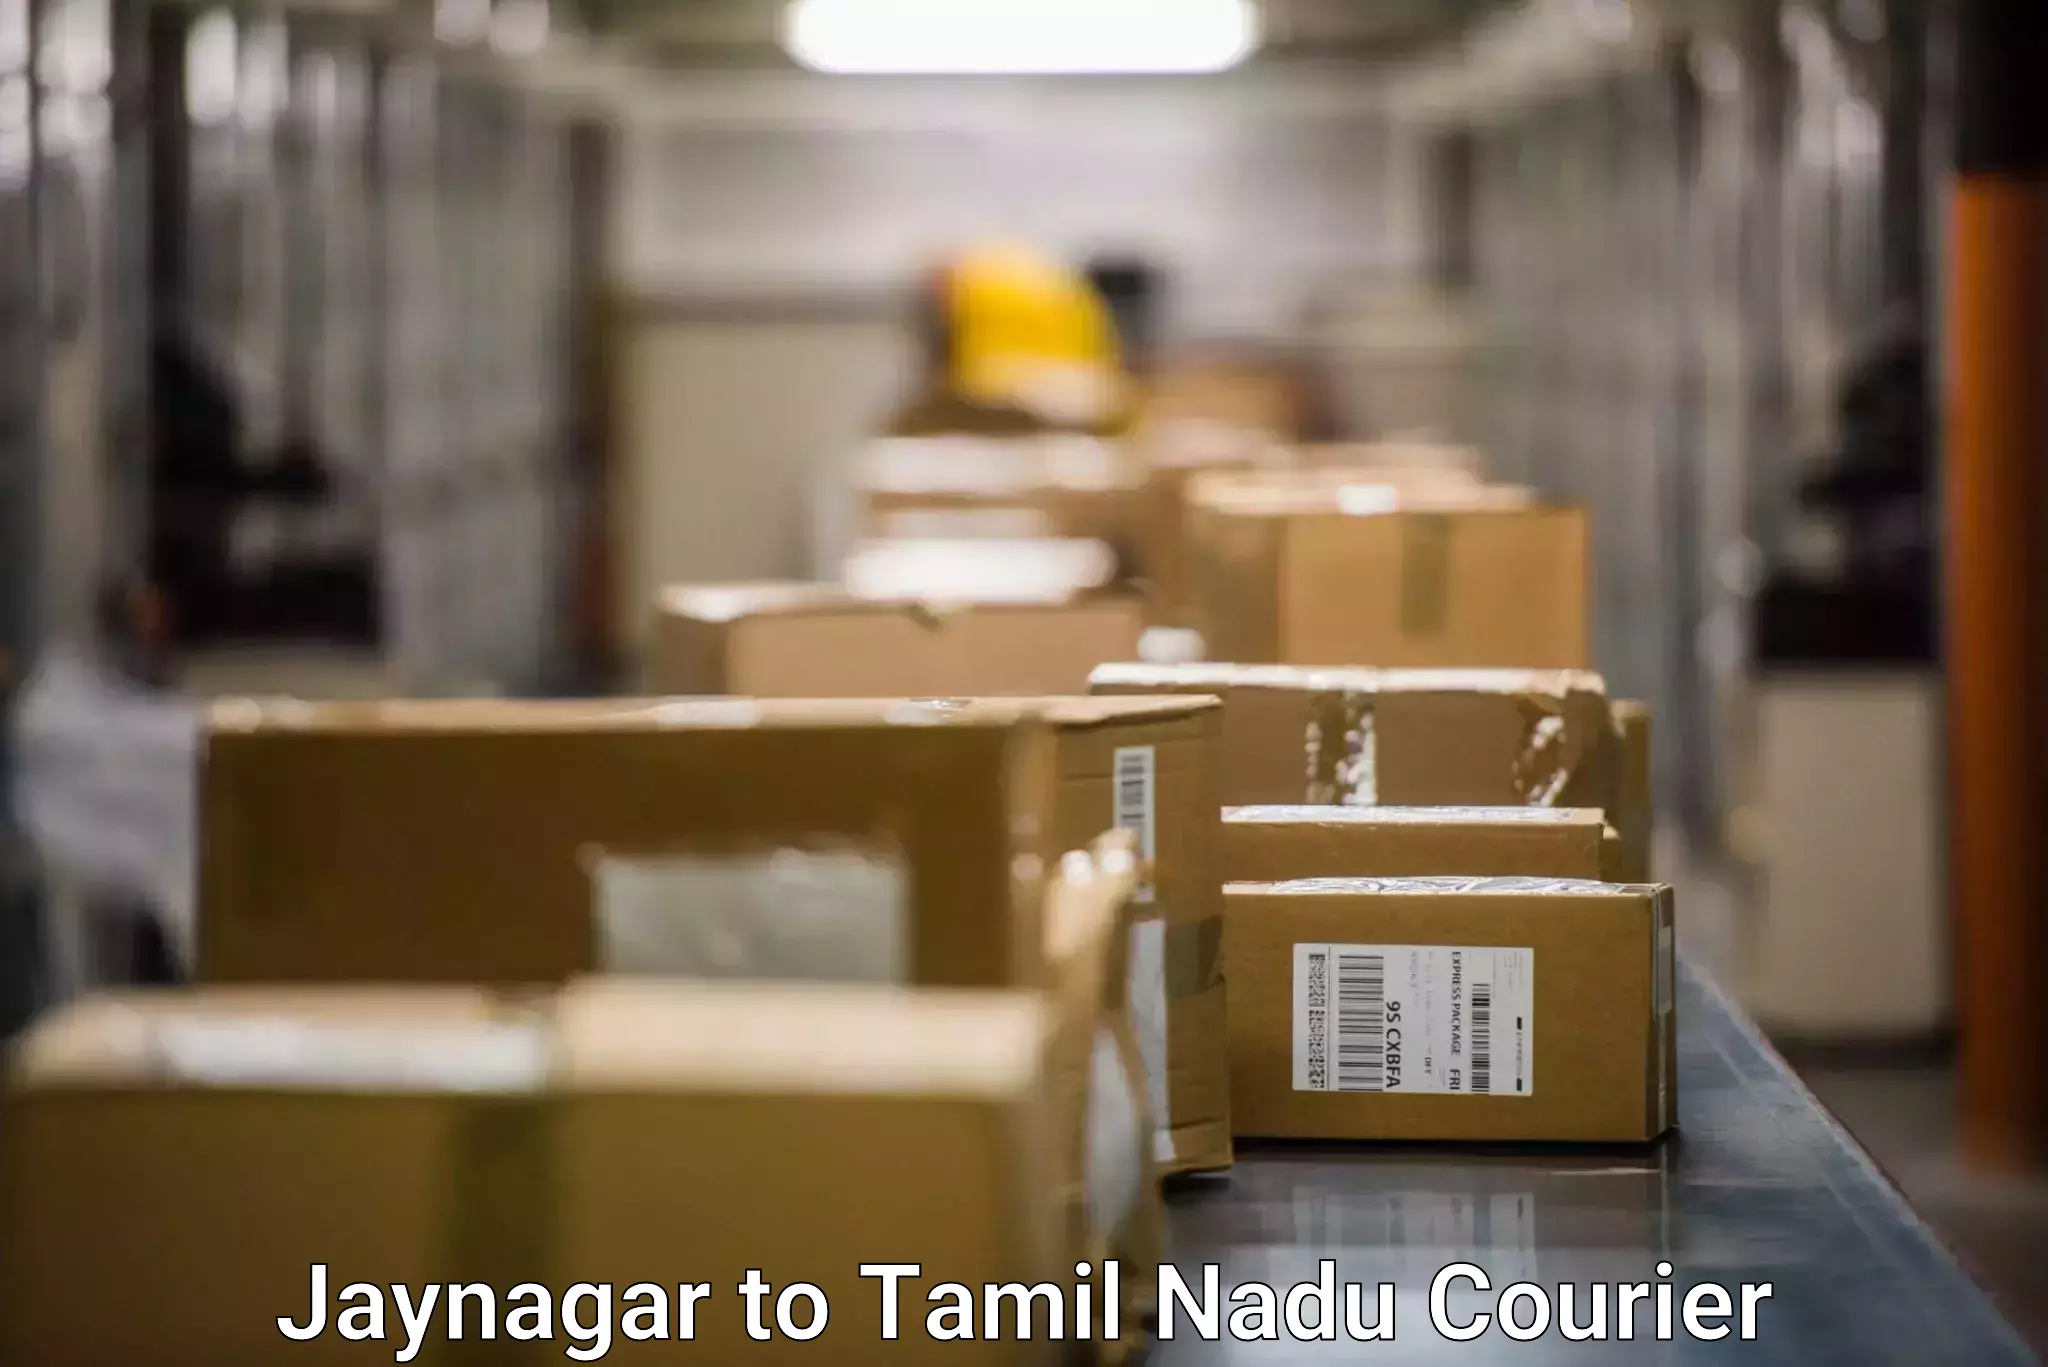 Efficient cargo handling Jaynagar to Tamil Nadu